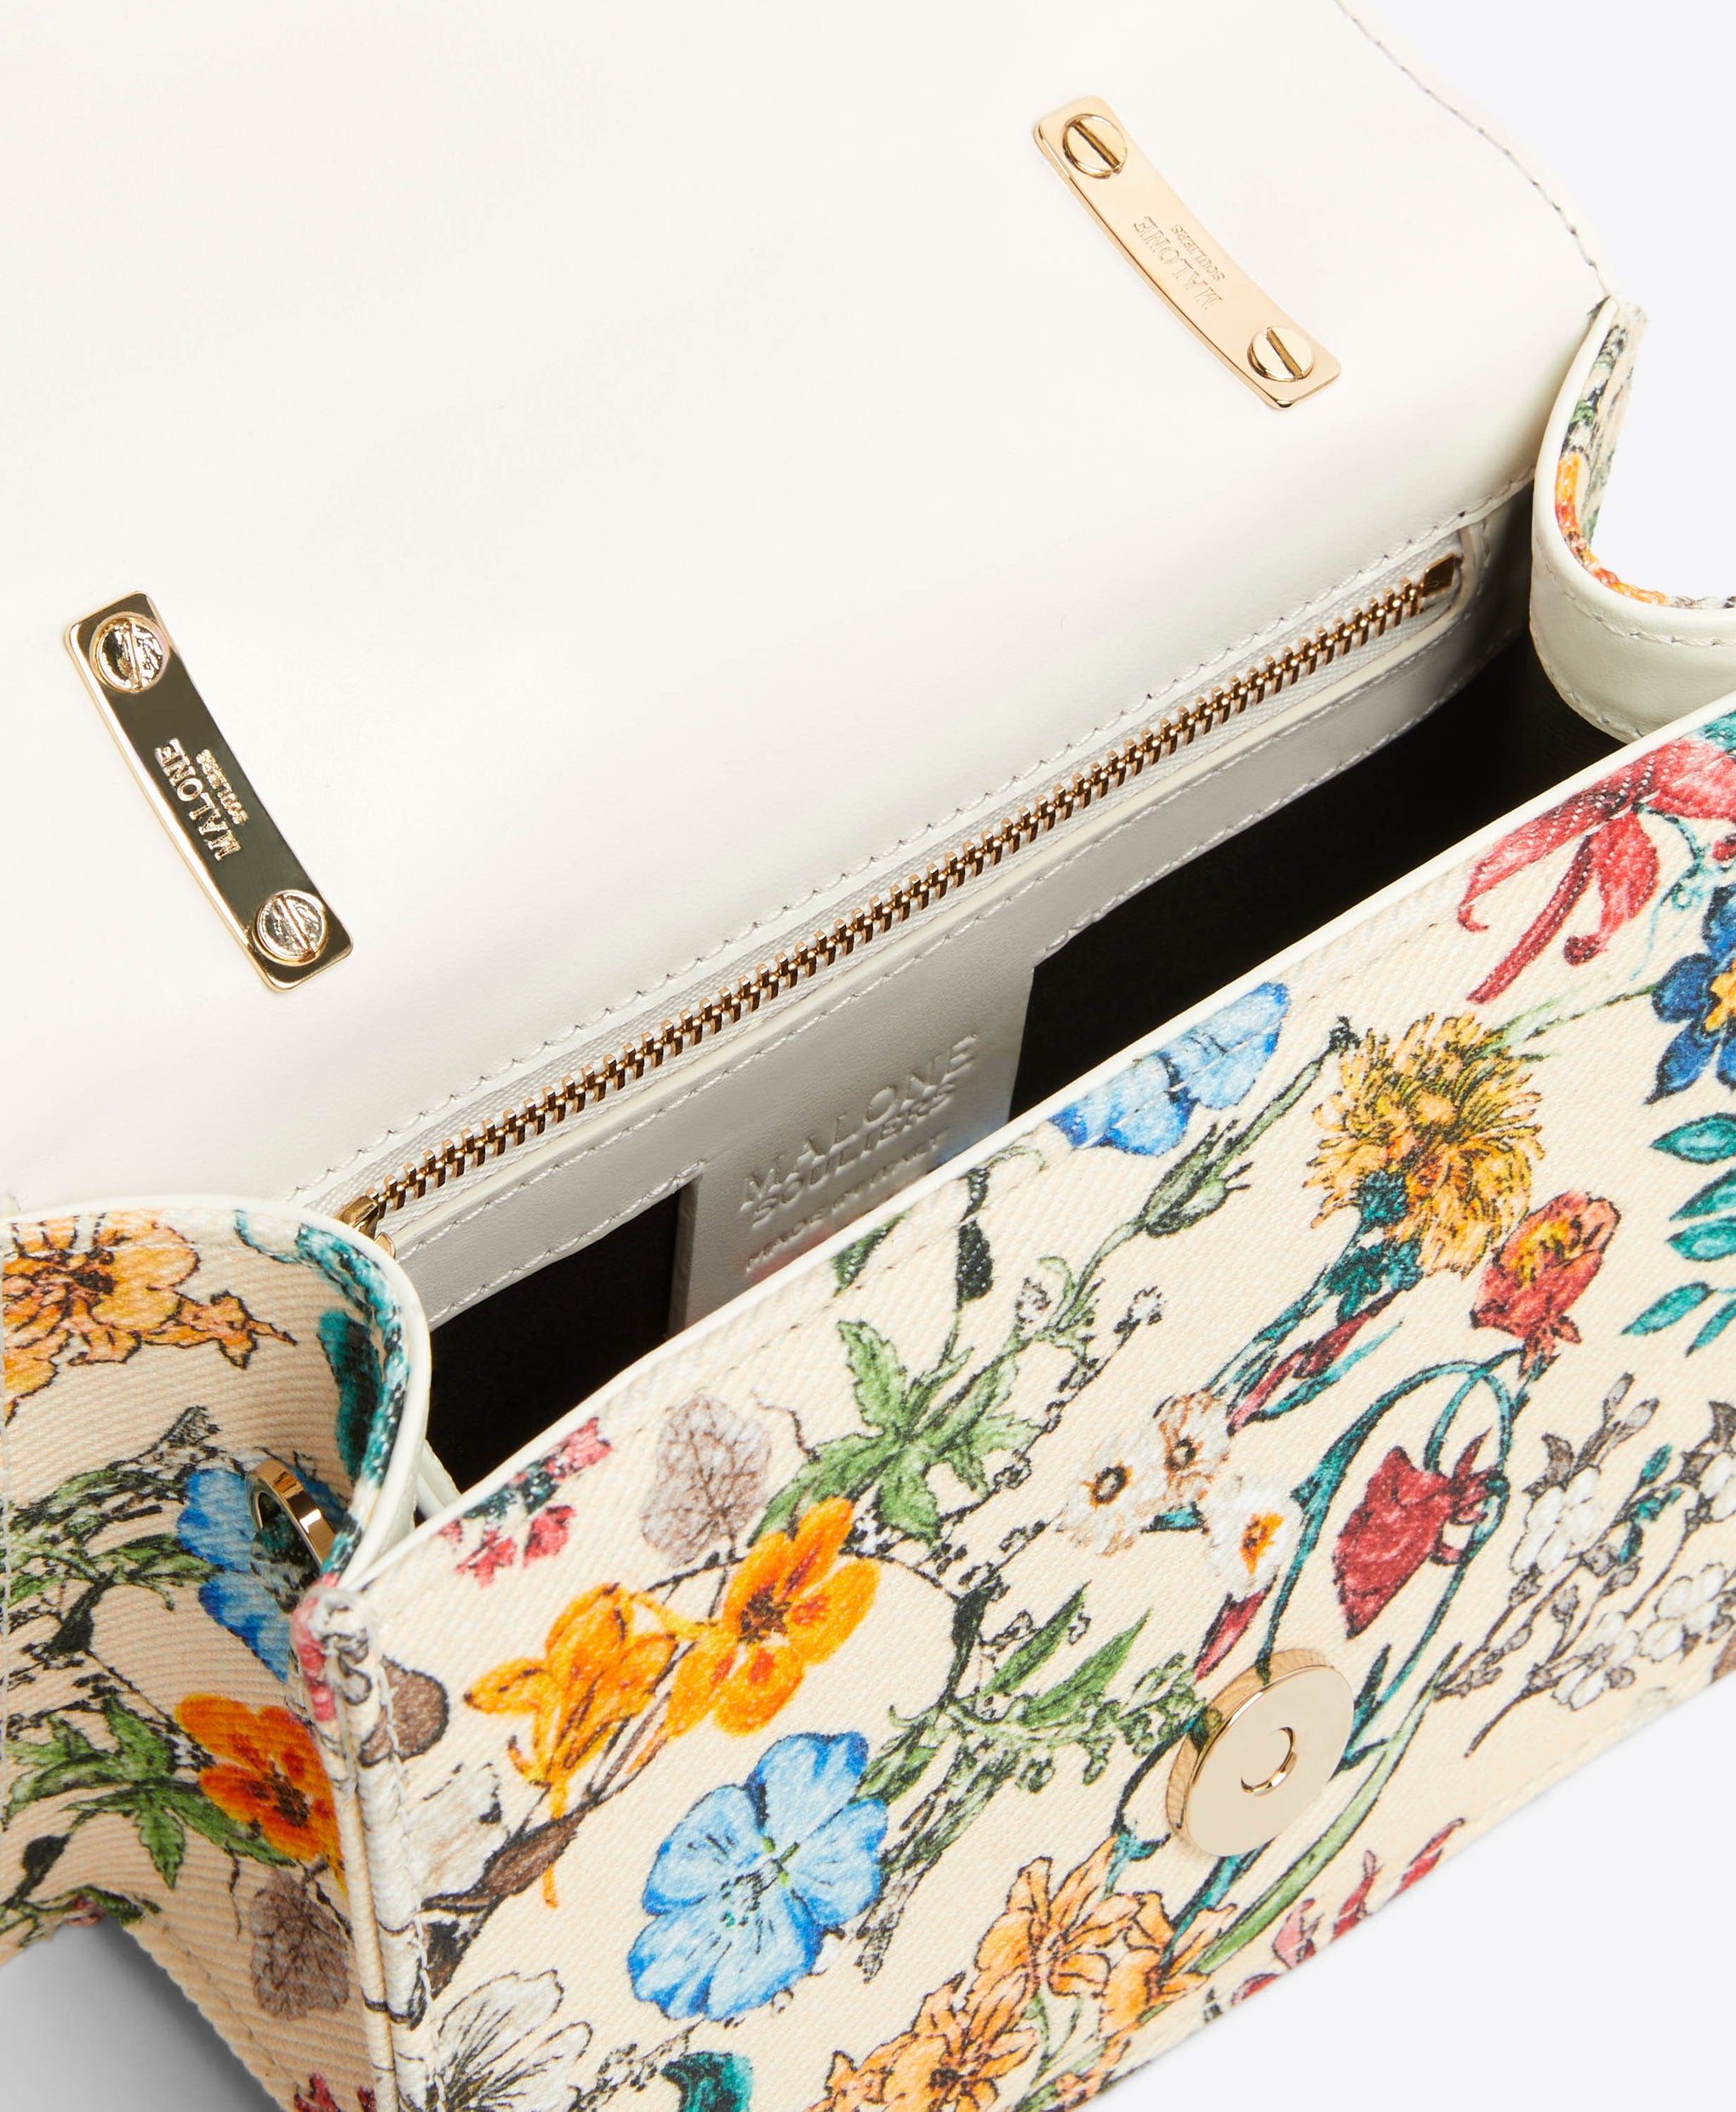 Mini Floral Cream Canvas Square-Top Handbag Malone Souliers